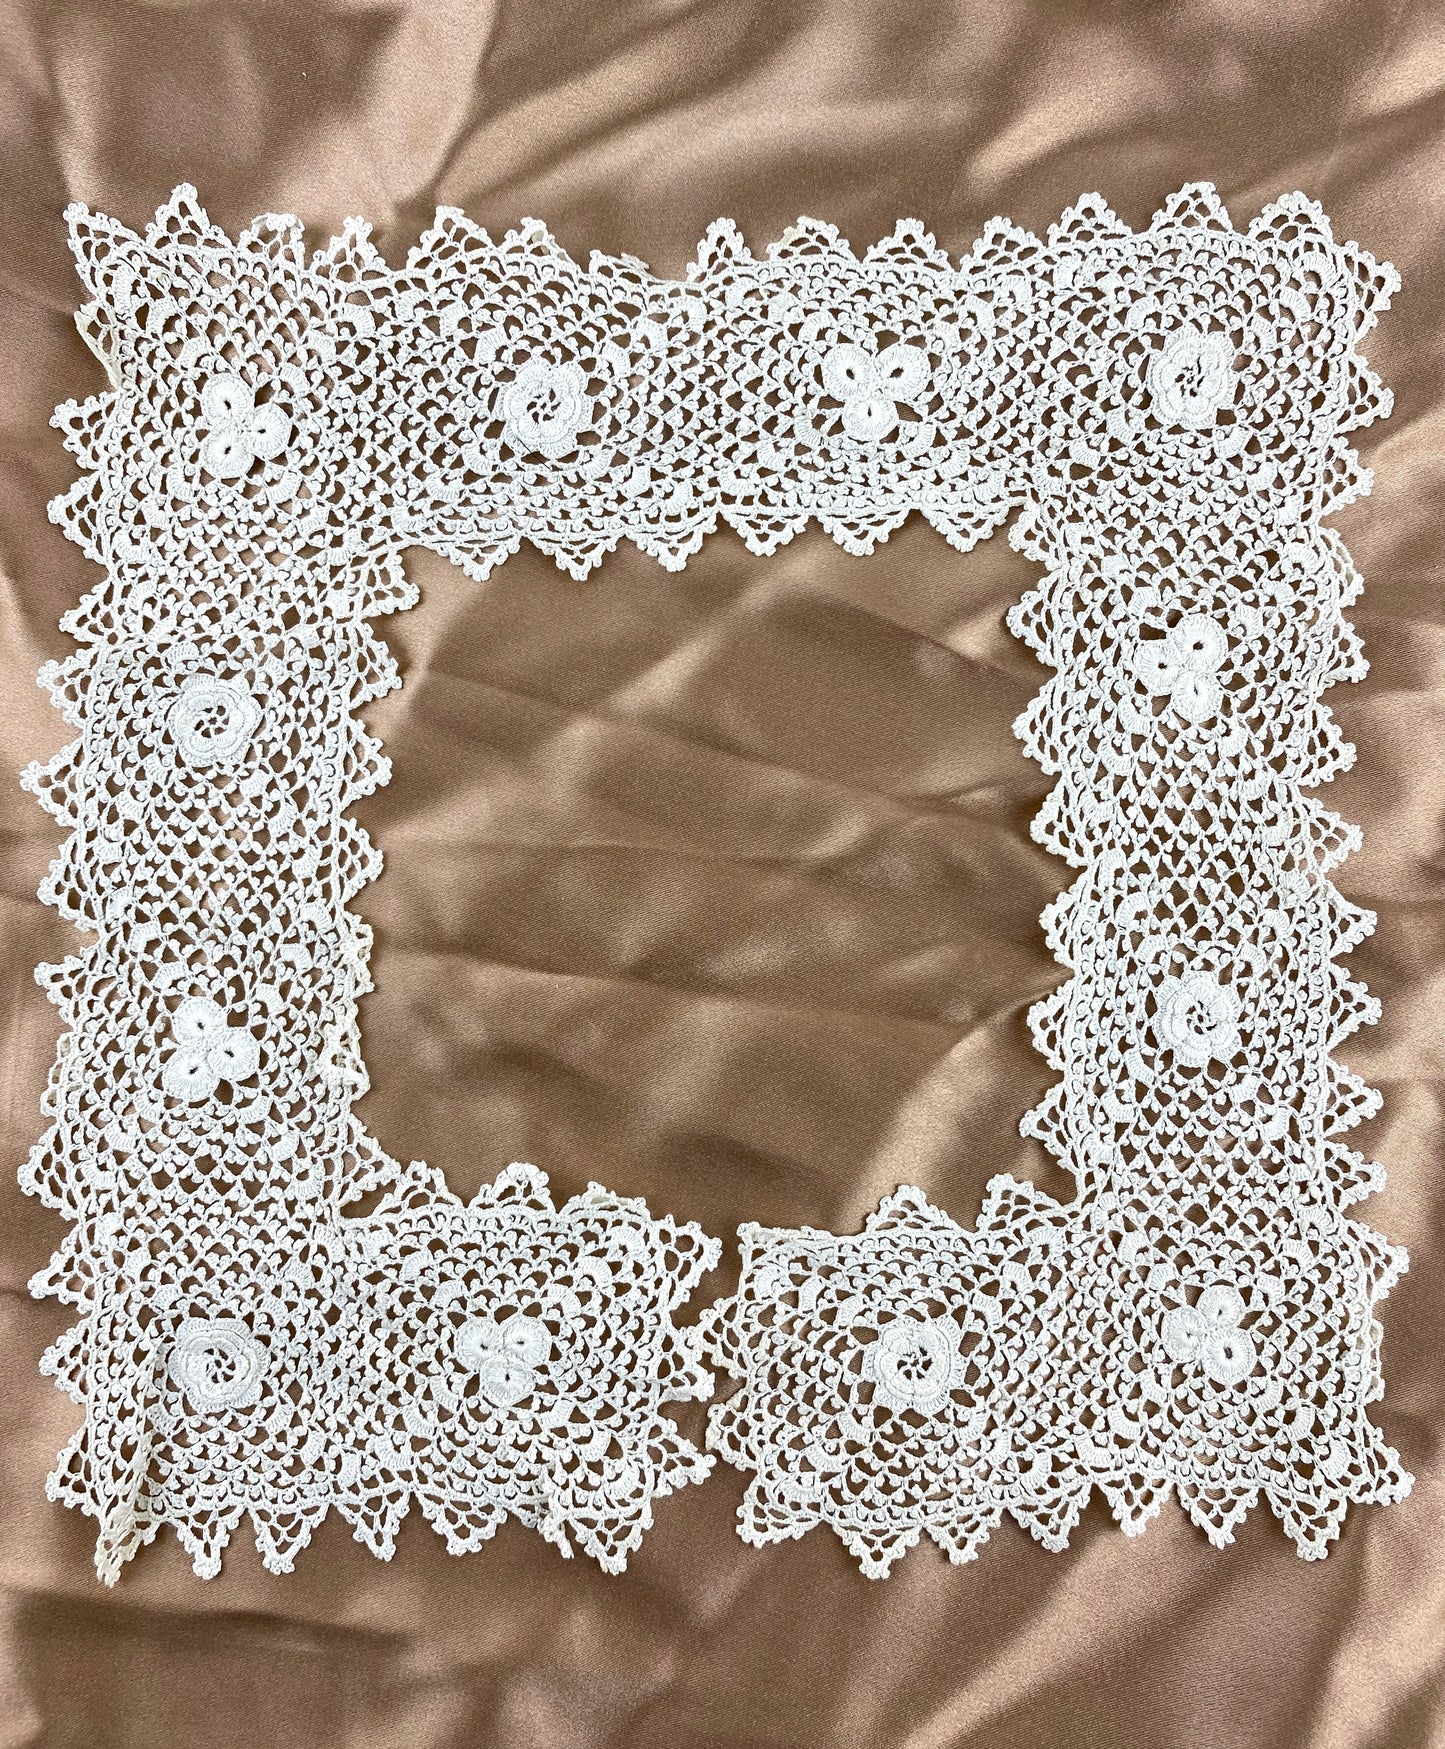 Antique 1910s Cream Irish Crochet Lace Square Collar